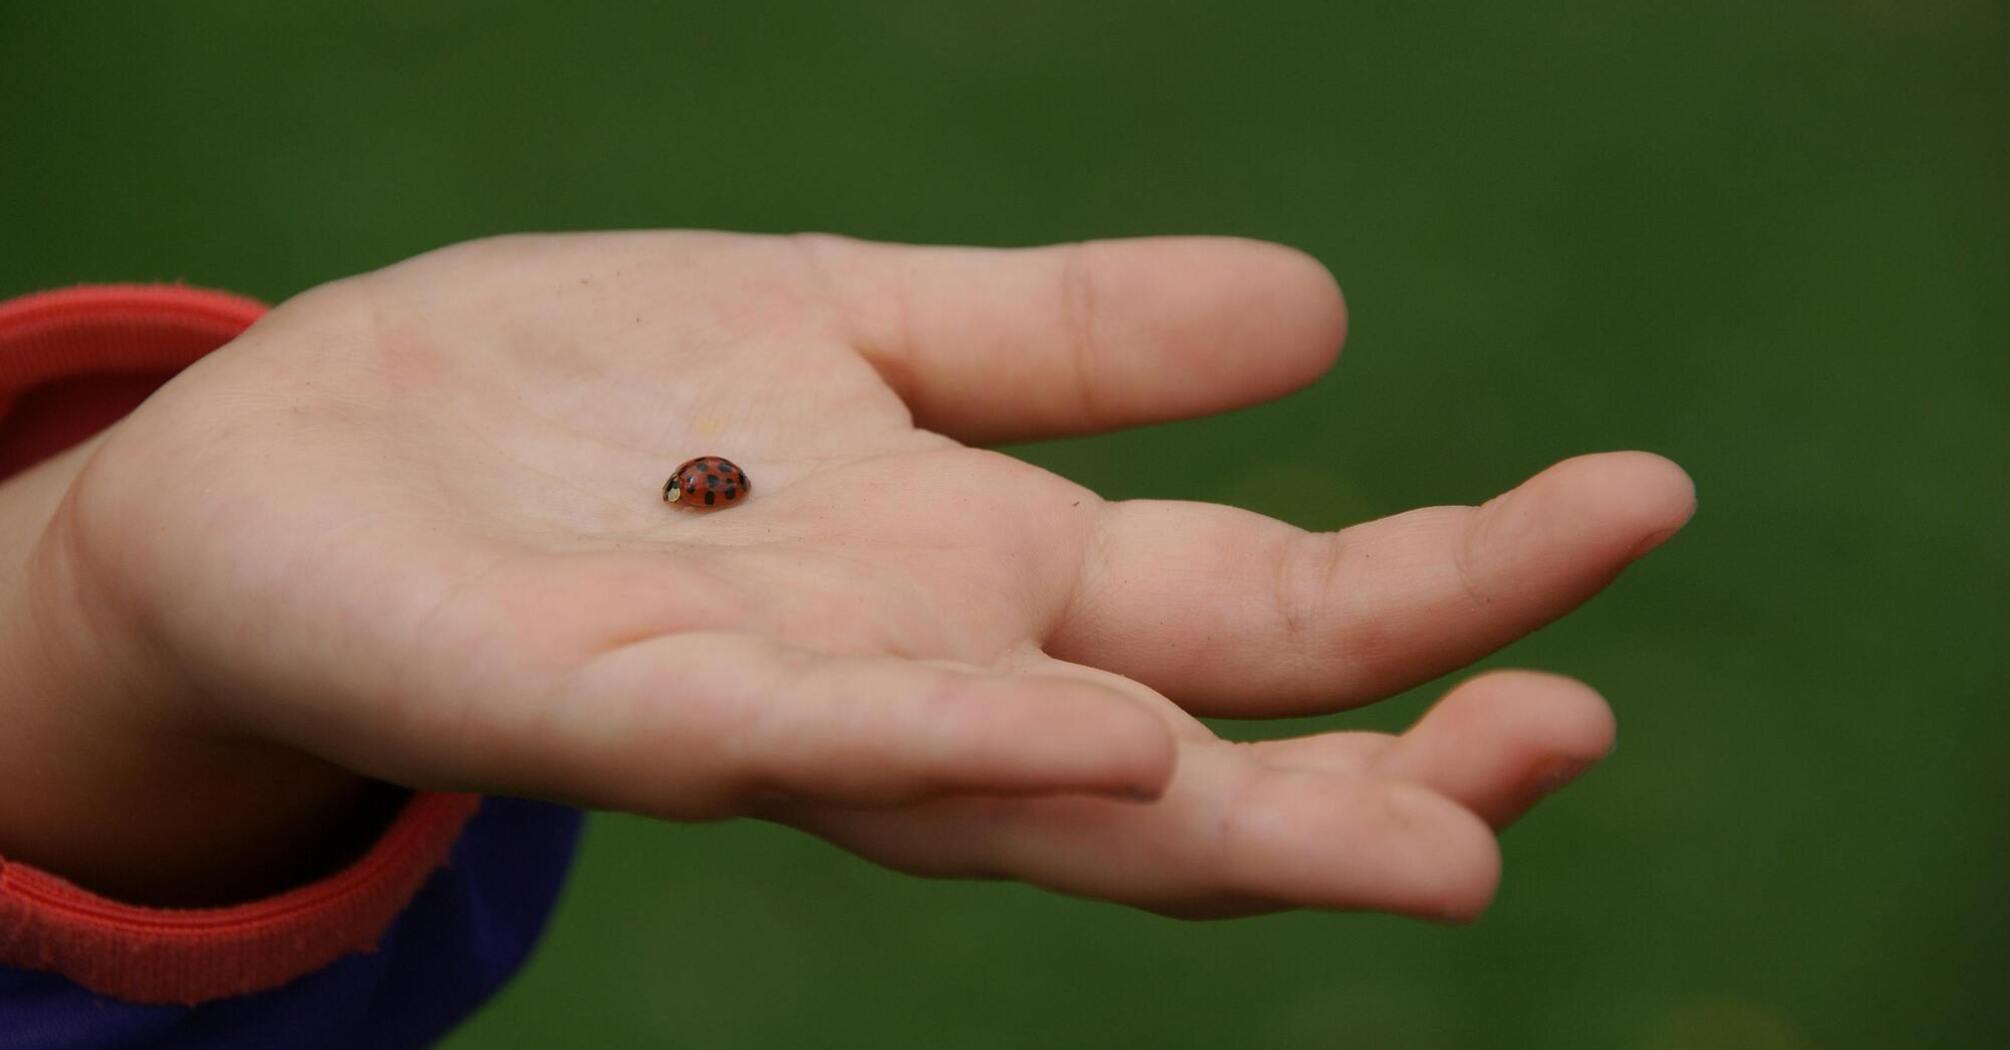 The symbolic meaning of the ladybug